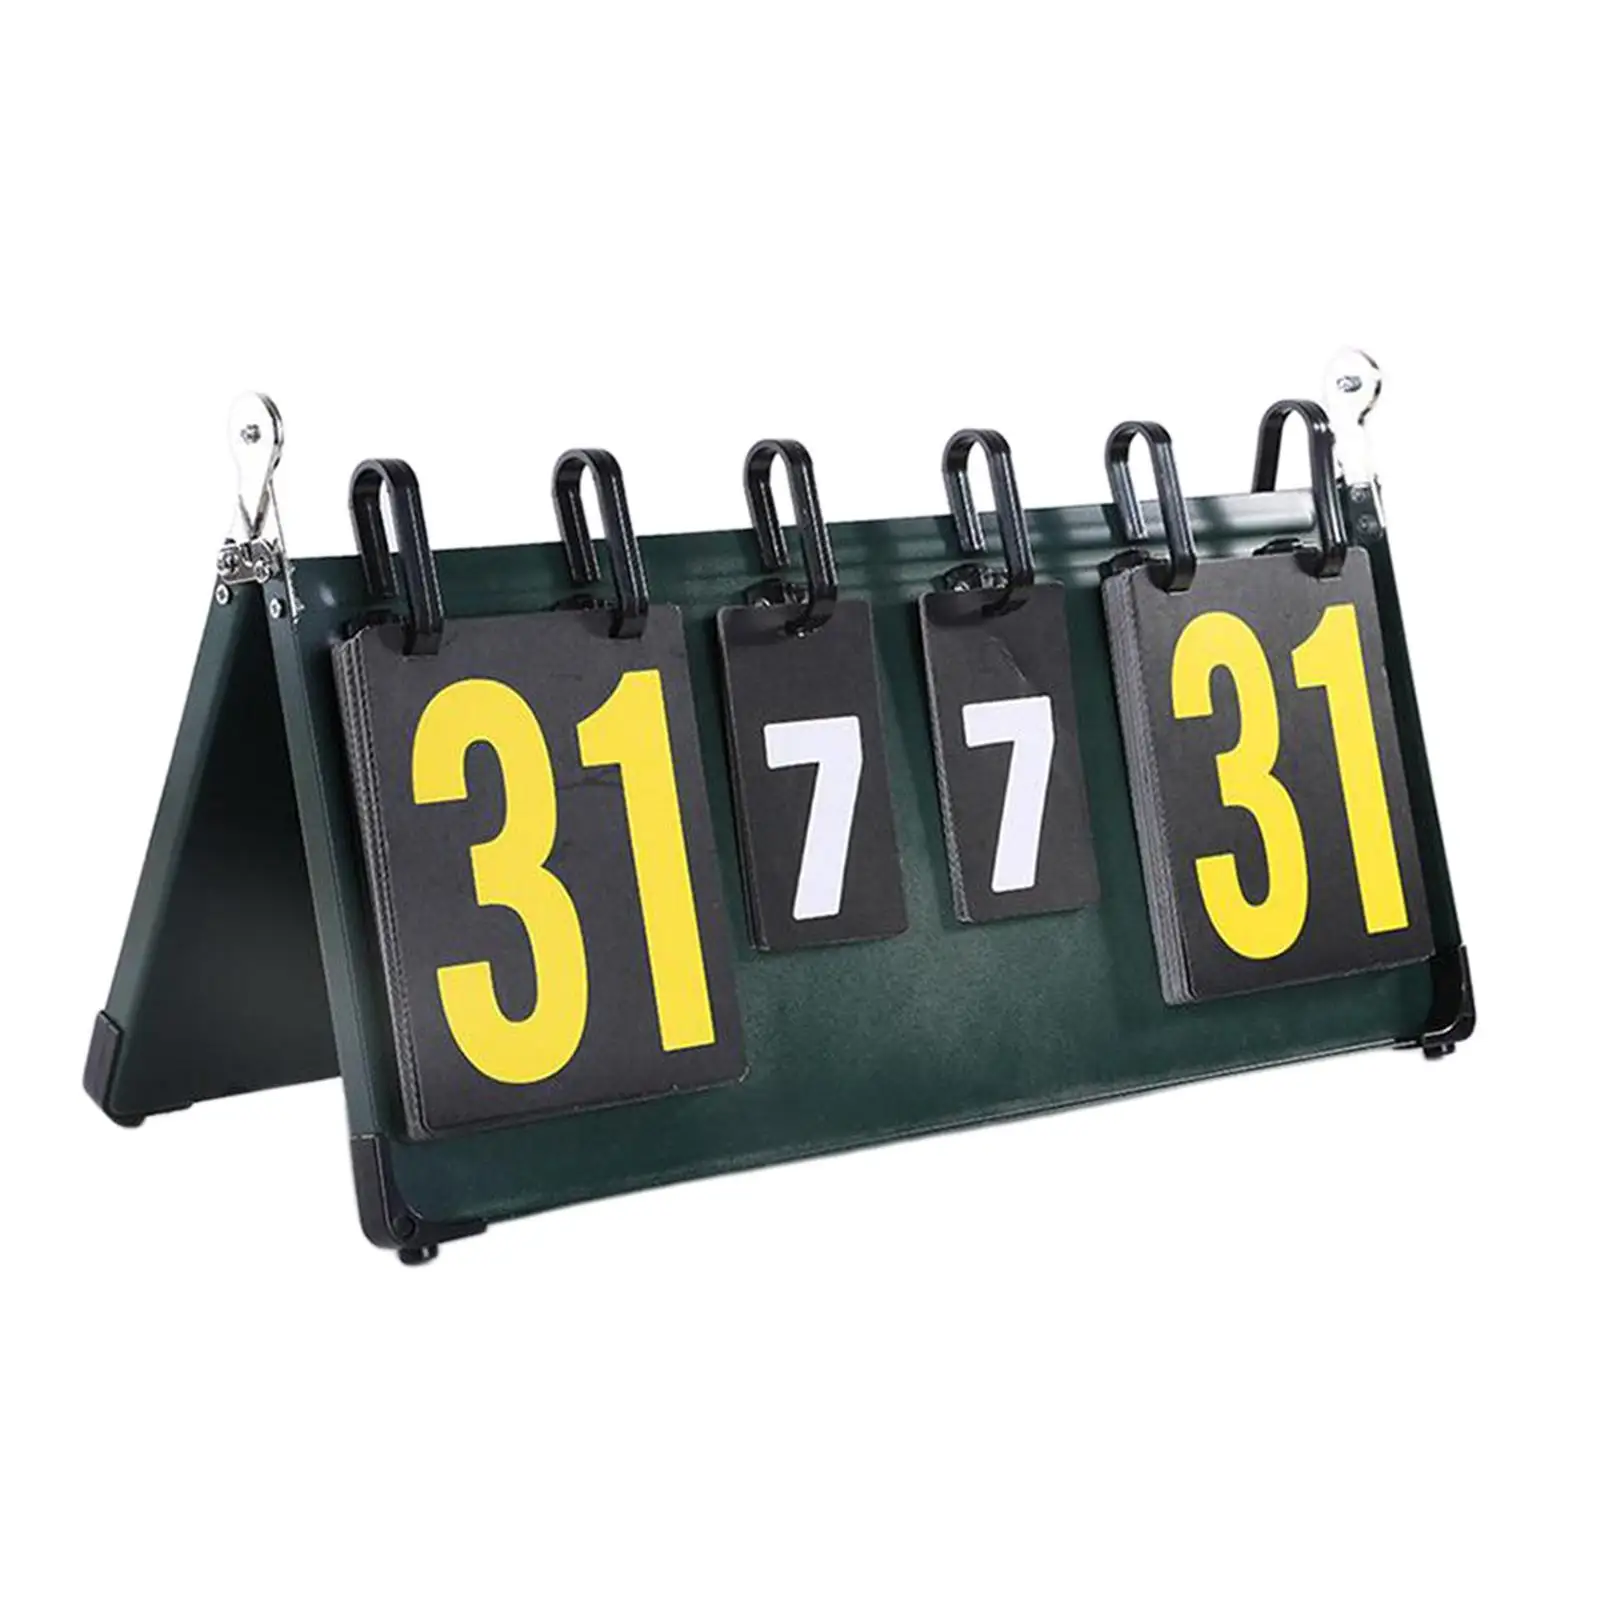 Table Scoreboard Professional Scorekeeper Score Keeper Score Board for Basketball Indoor Outdoor Soccer Baseball Tennis